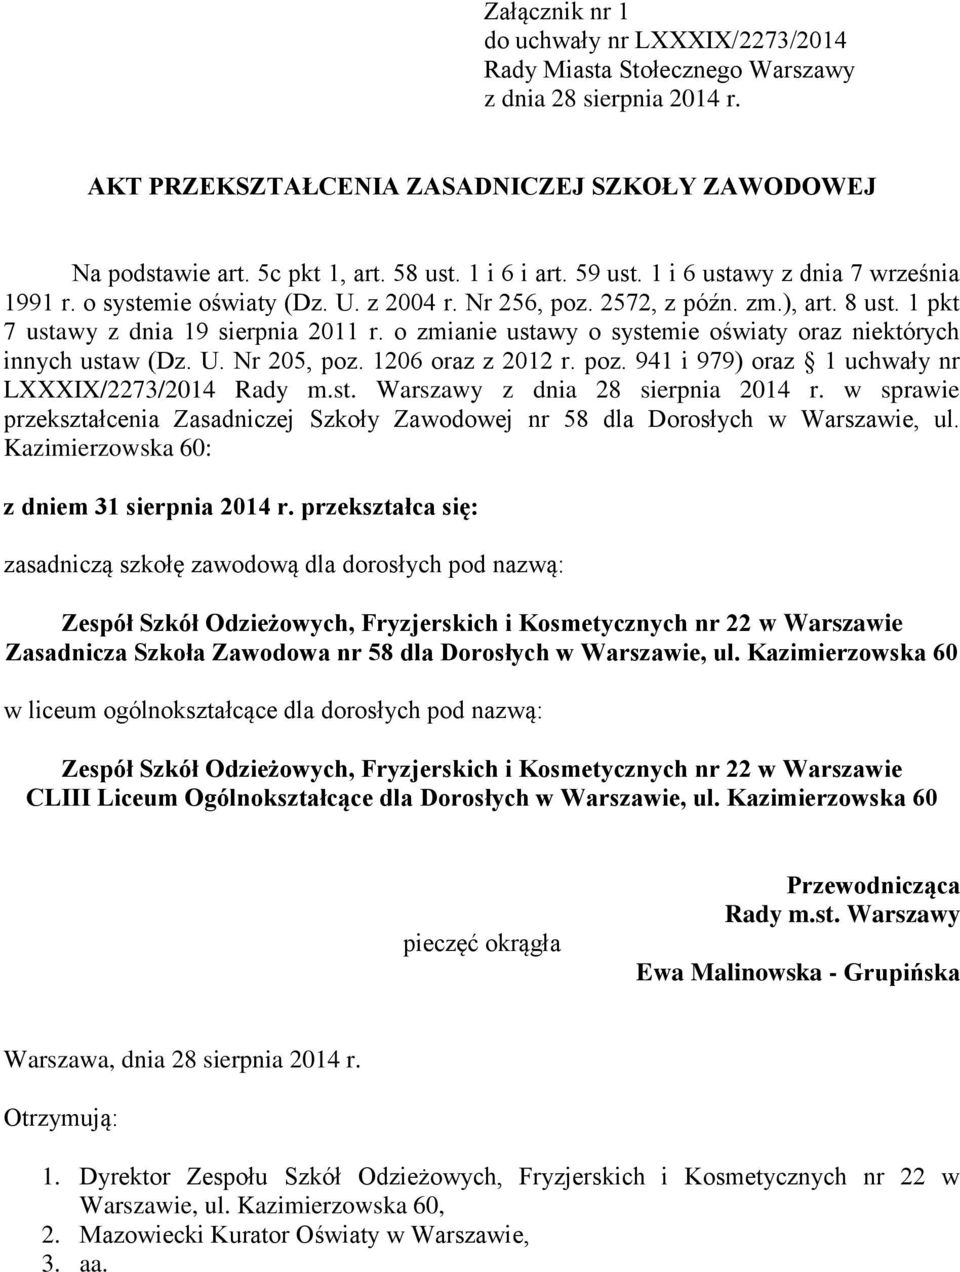 o zmianie ustawy o systemie oświaty oraz niektórych innych ustaw (Dz. U. Nr 205, poz. 1206 oraz z 2012 r. poz. 941 i 979) oraz 1 uchwały nr LXXXIX/2273/2014 Rady m.st. Warszawy z dnia 28 sierpnia 2014 r.